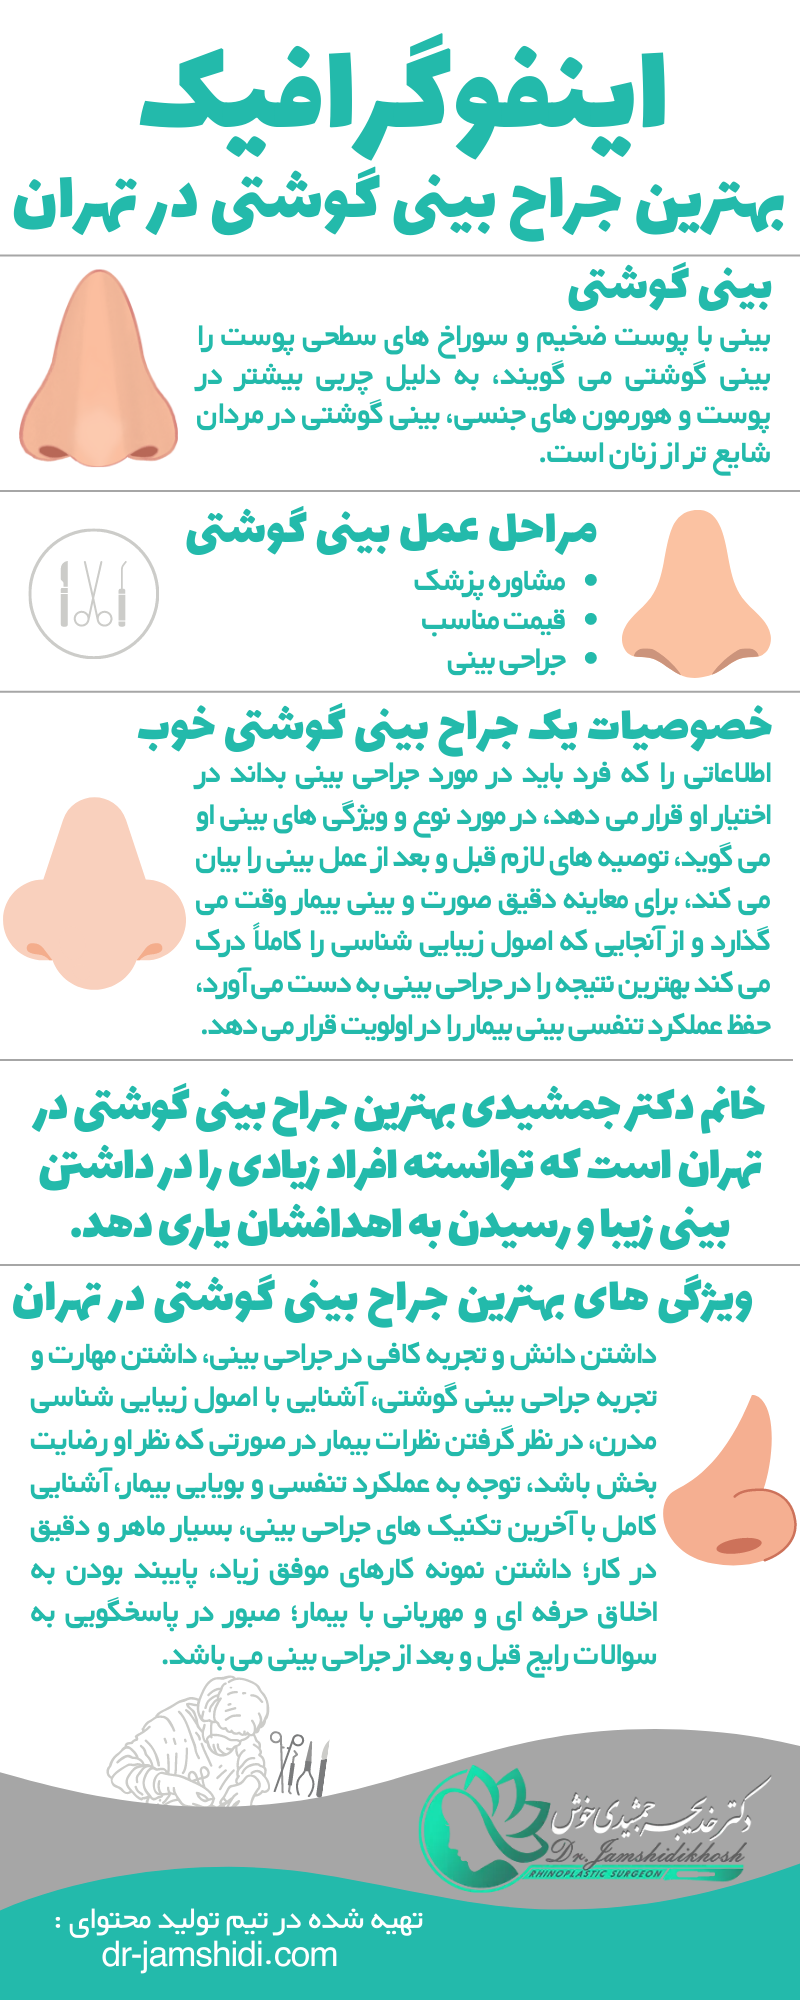 اینفوگرافیک بهترین جراح بینی گوشتی در تهران